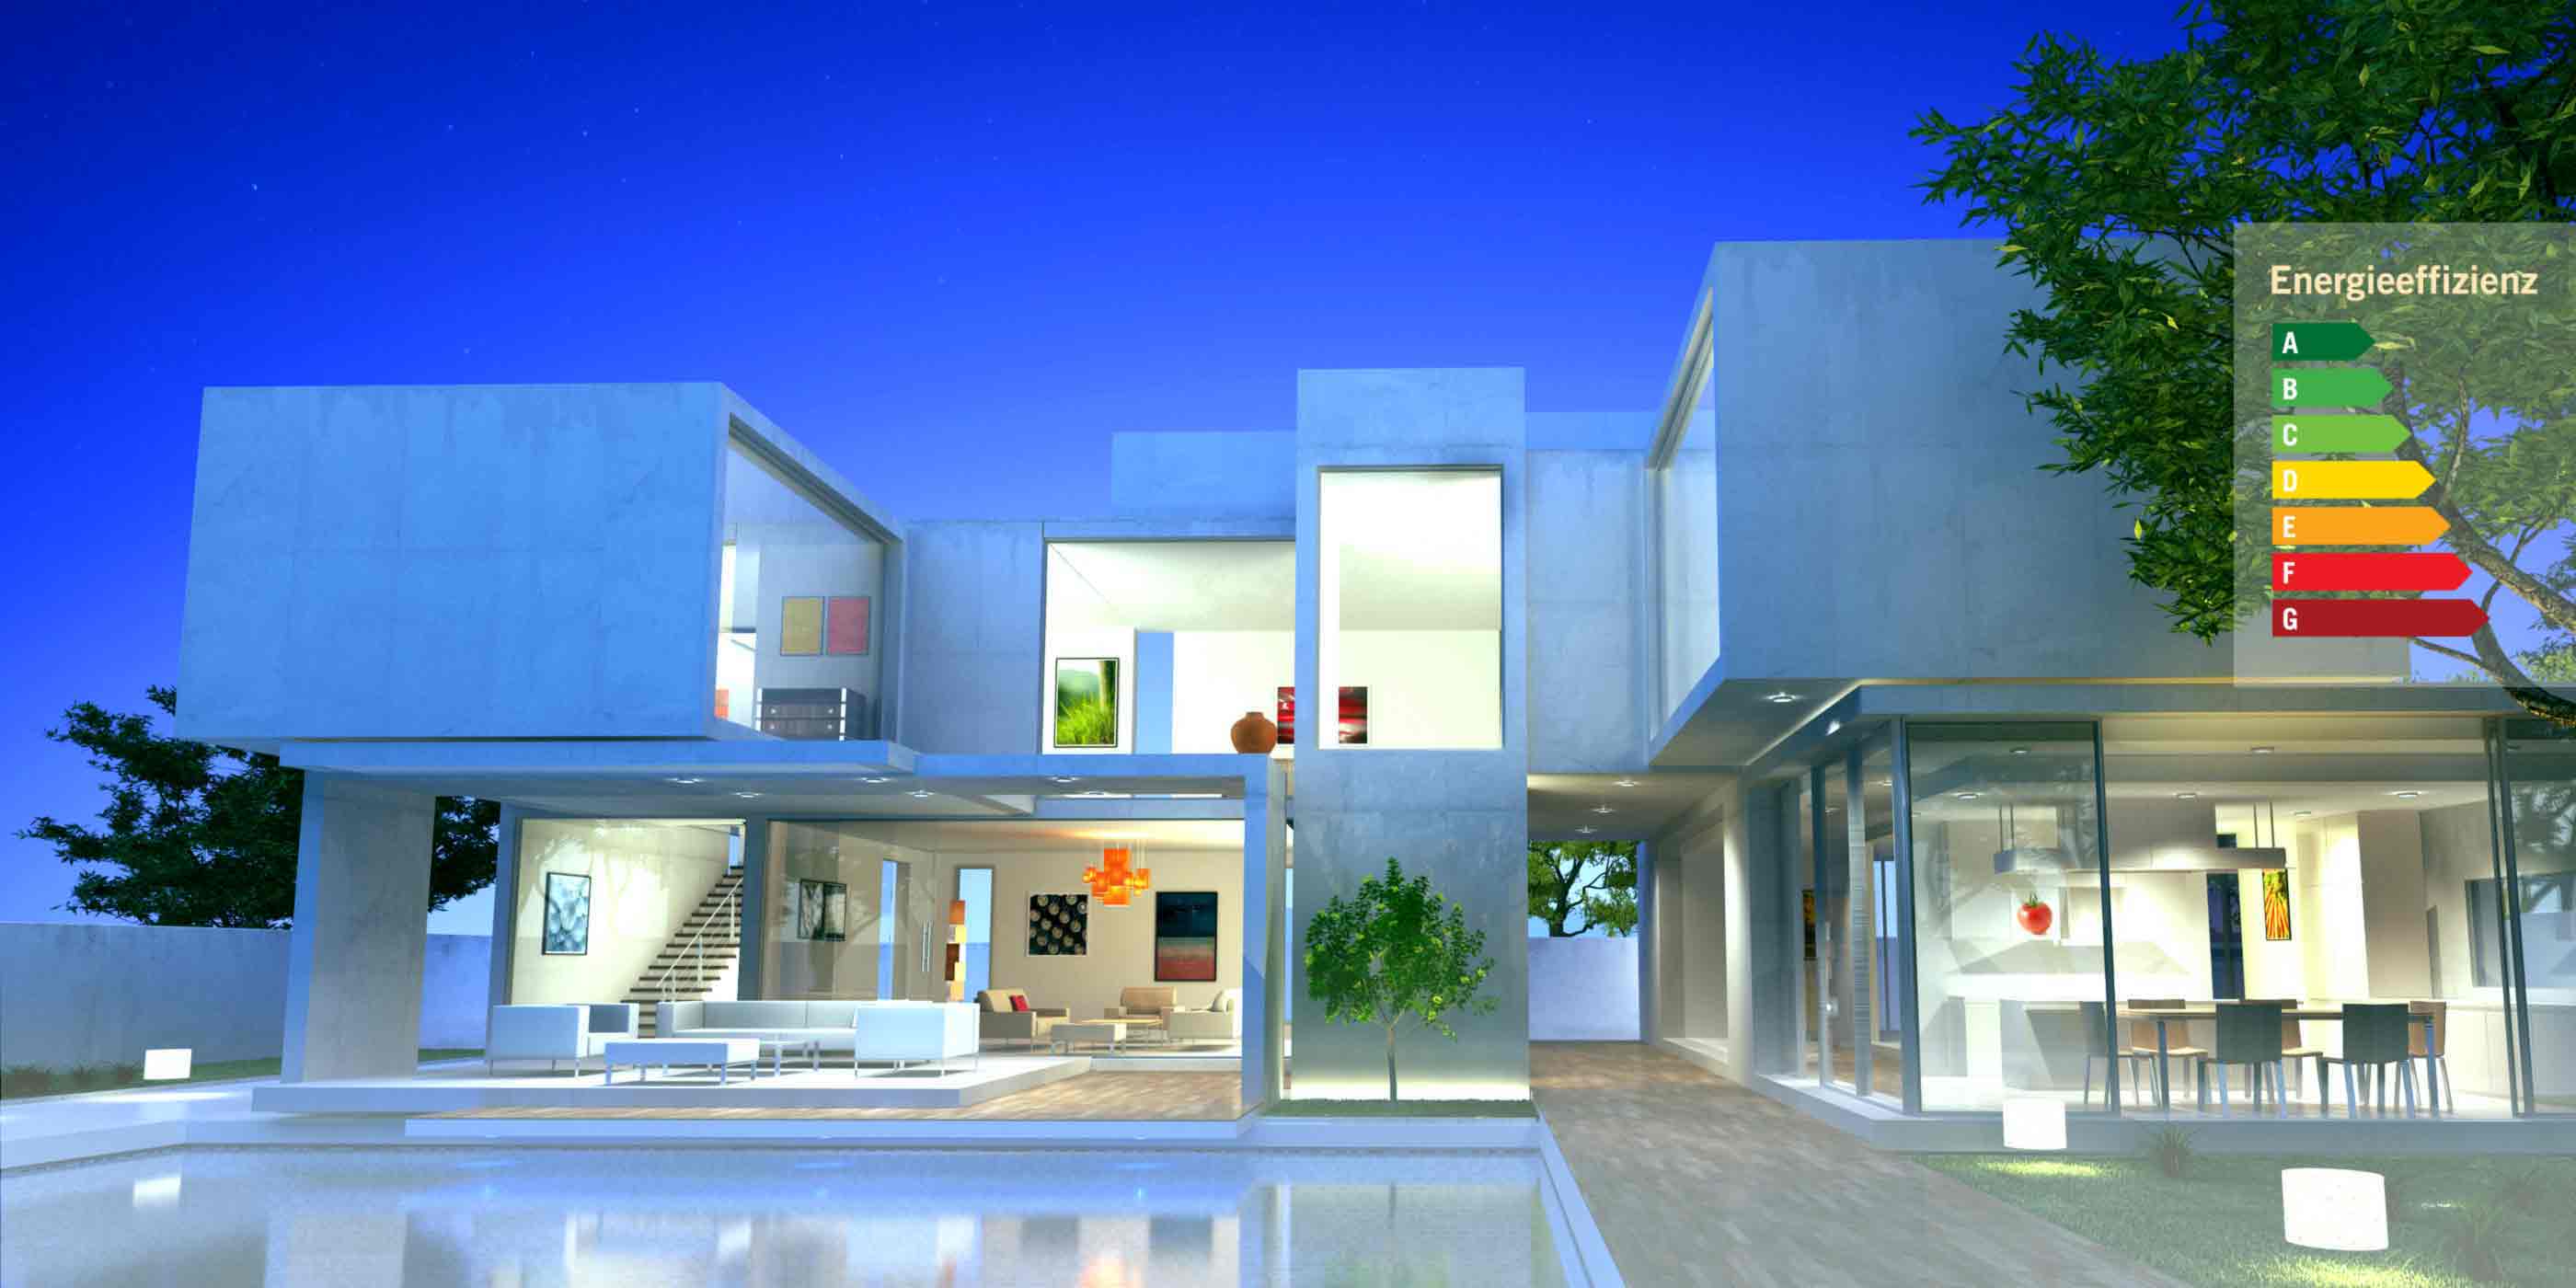 Gut ausgeleuchtetes modernes Haus mit großen Glasflächen vor Abendhimmel